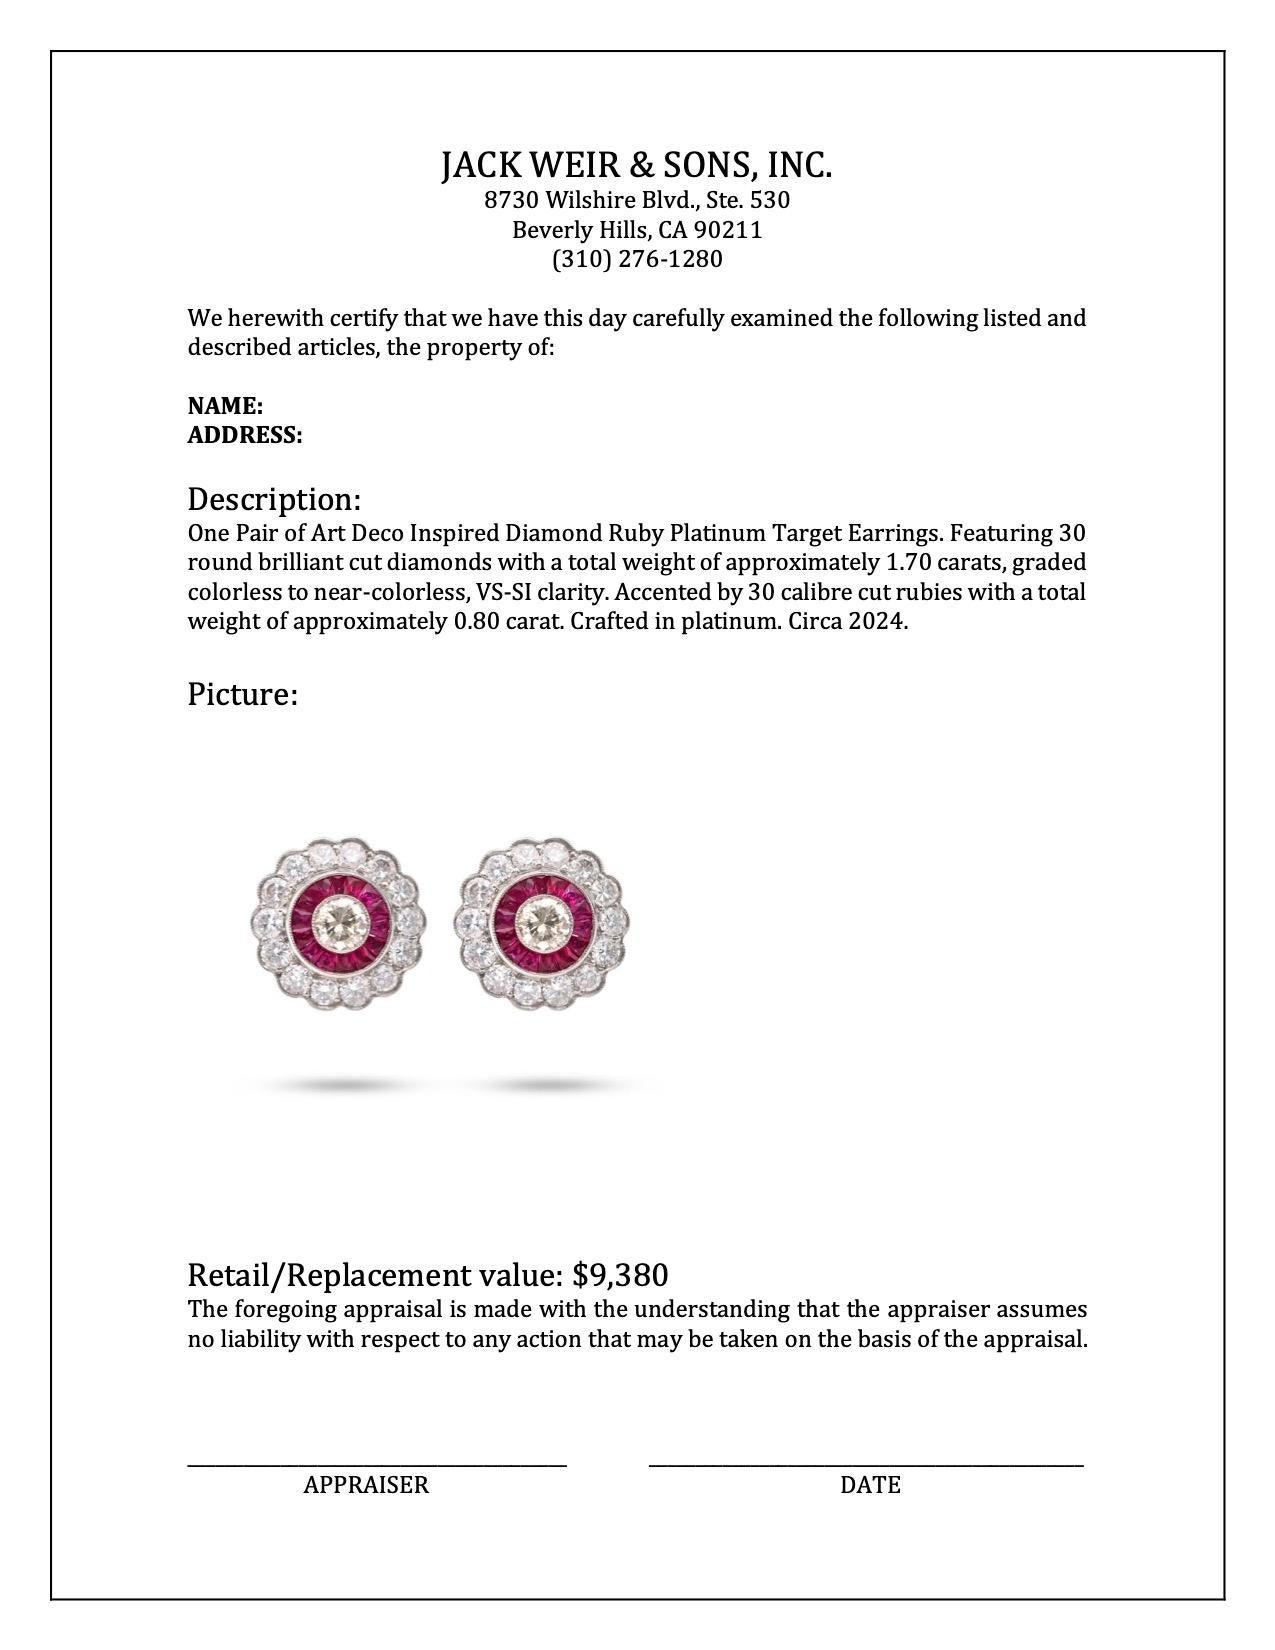 Women's or Men's Art Deco Inspired Diamond Ruby Platinum Target Earrings For Sale